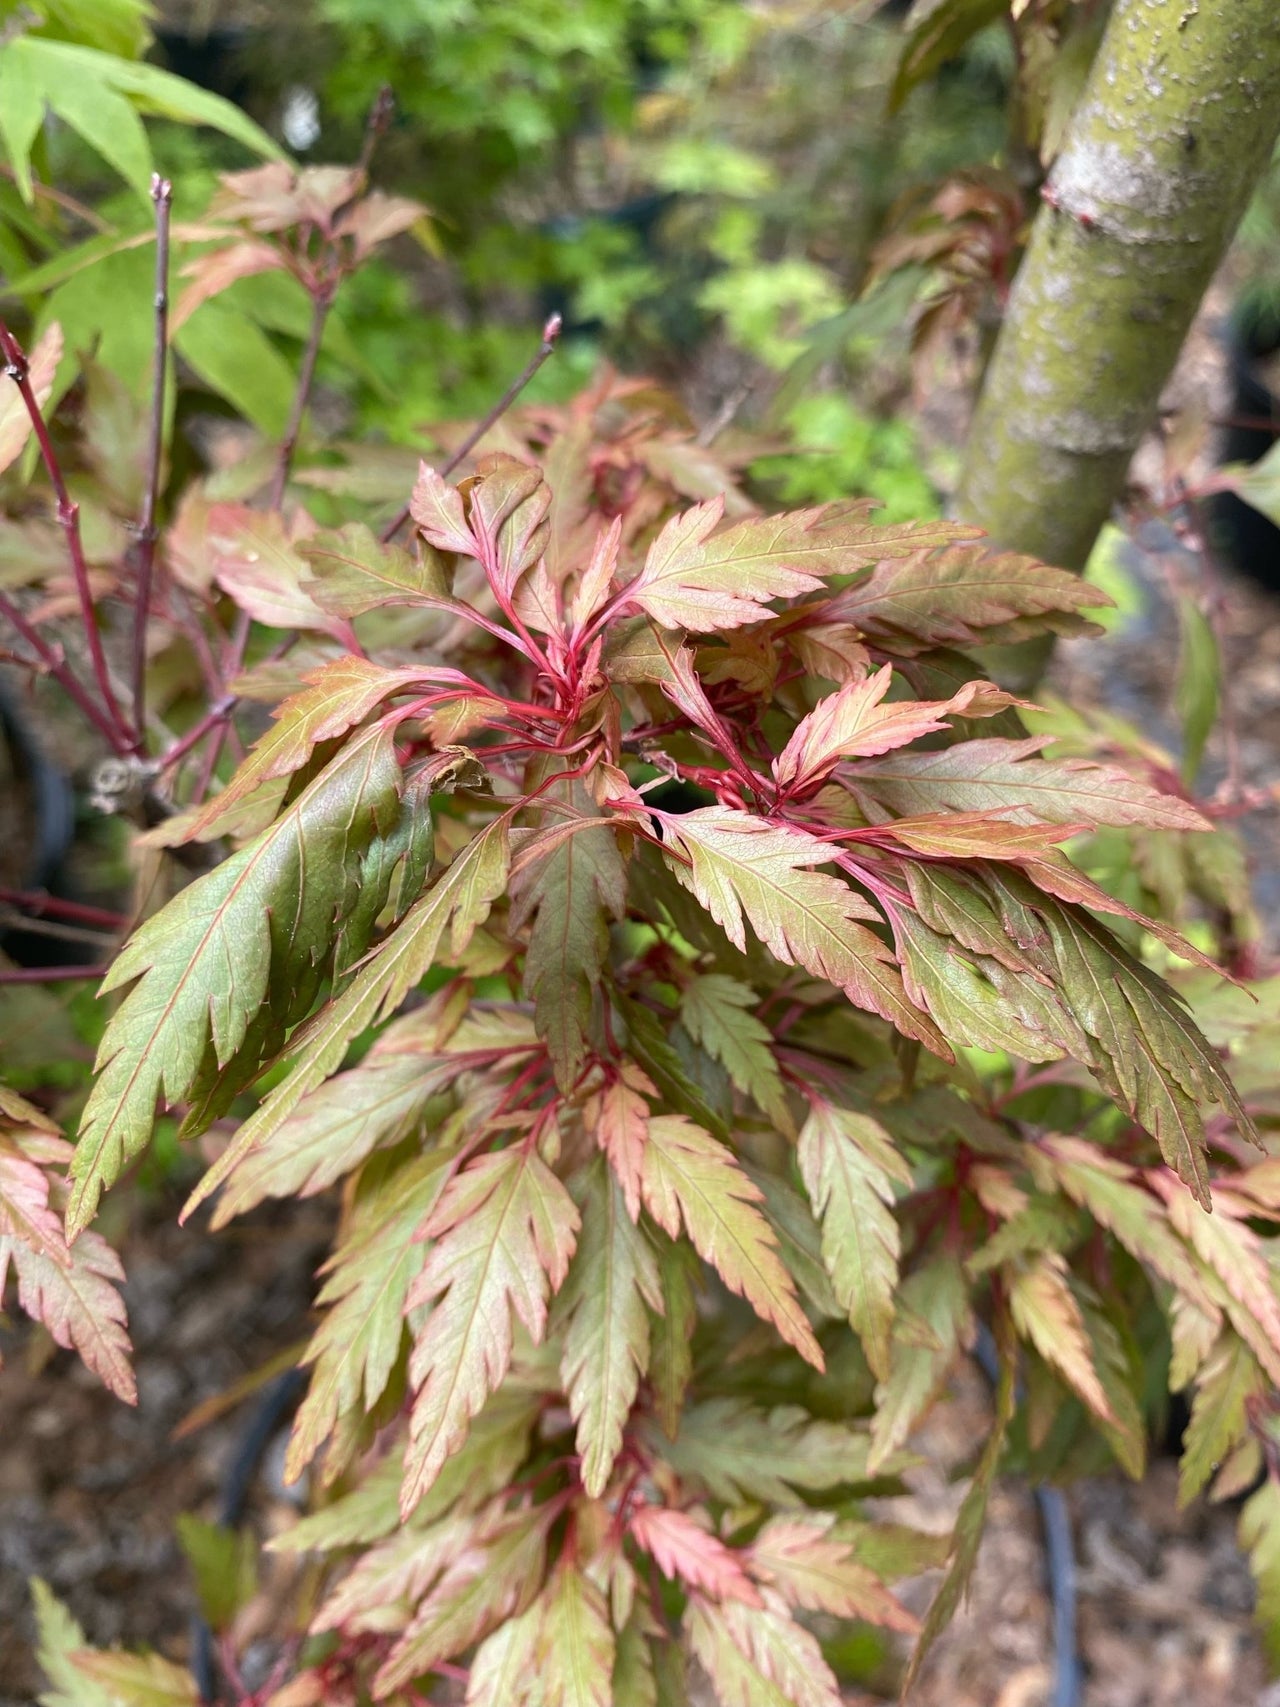 Acer palmatum 'Verkade's Jacus Potus' - Maple Ridge Nursery